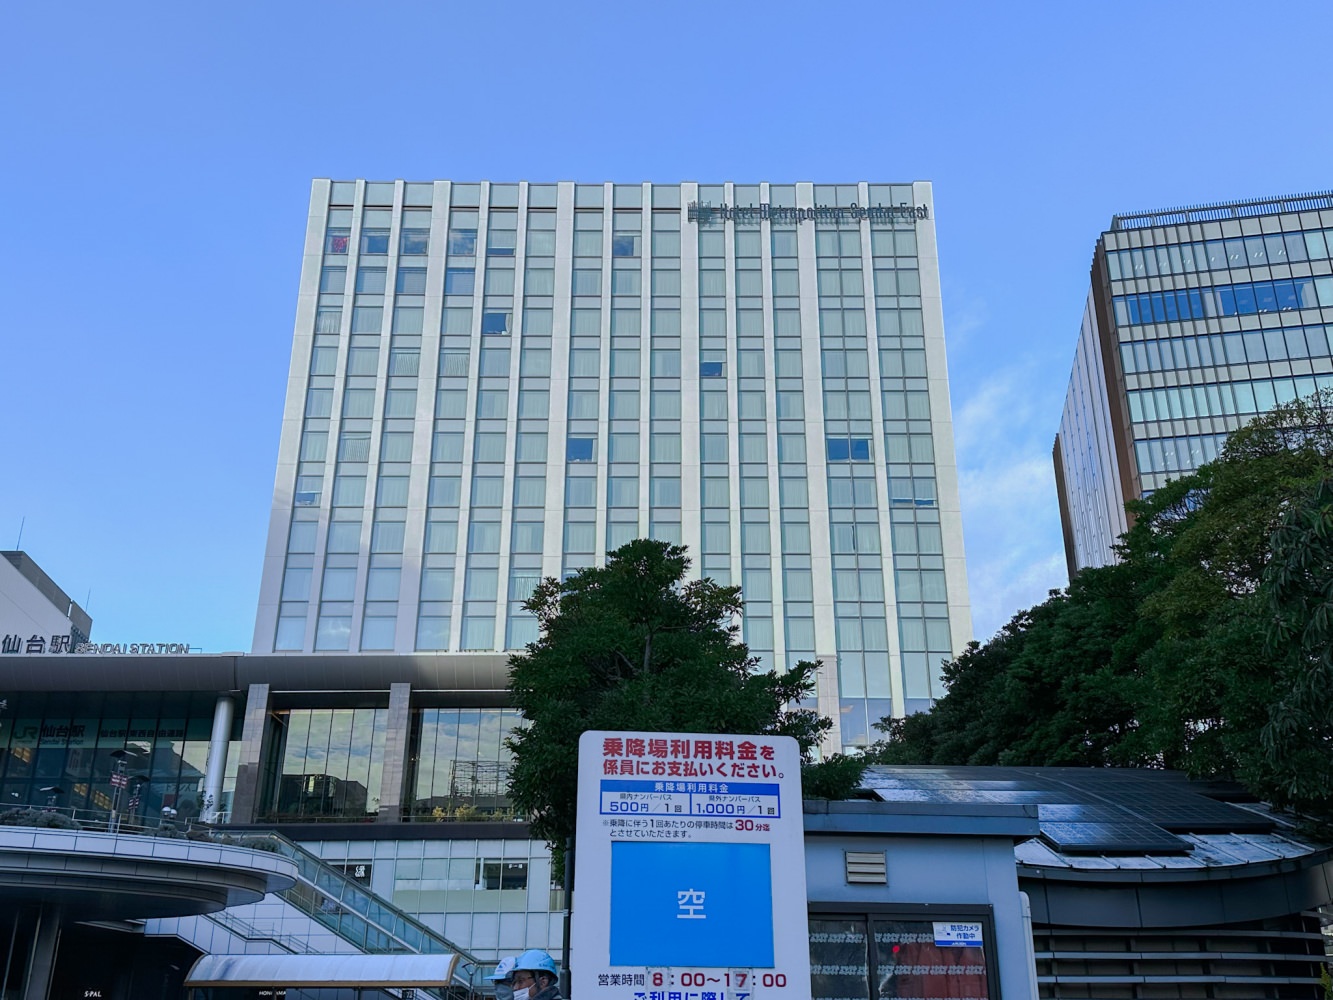 東仙台大都會飯店 
Hotel Metropolitan Sendai East